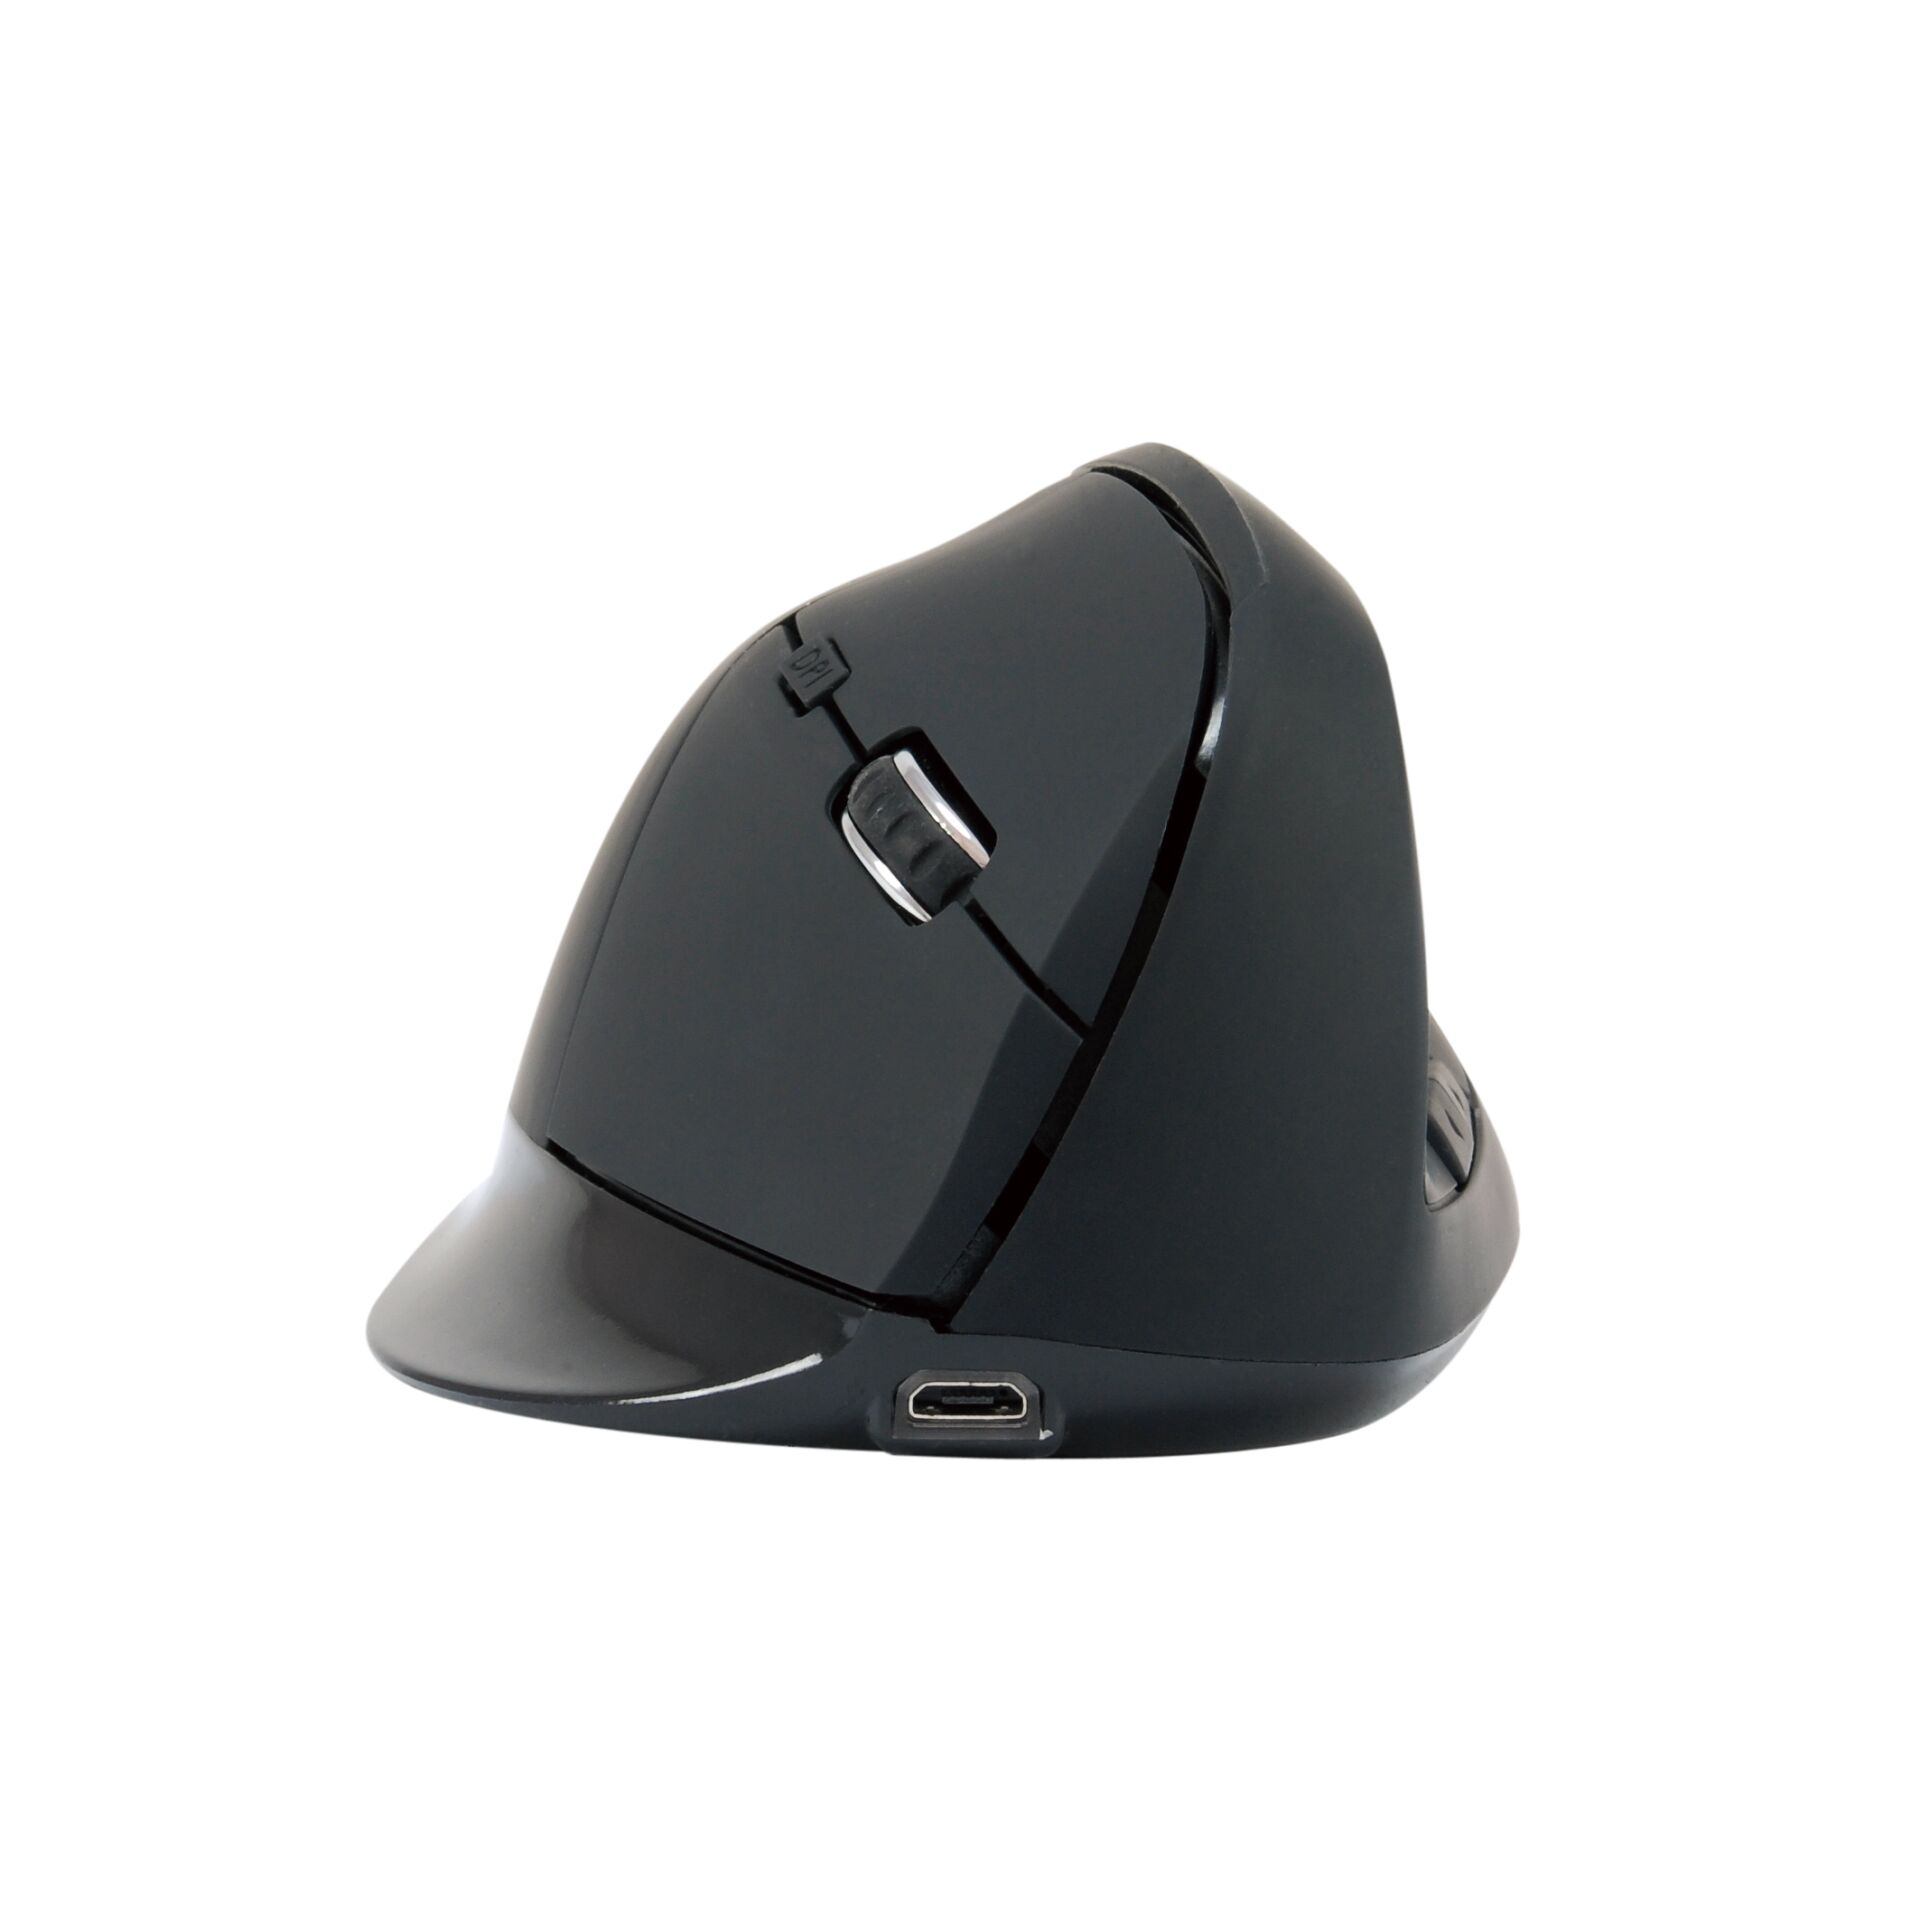 Conceptronic LORCAN03B ERGO Vertikale 6-Tasten Bluetooth Maus schwarz, Maus, rechtshänder (vertikal)